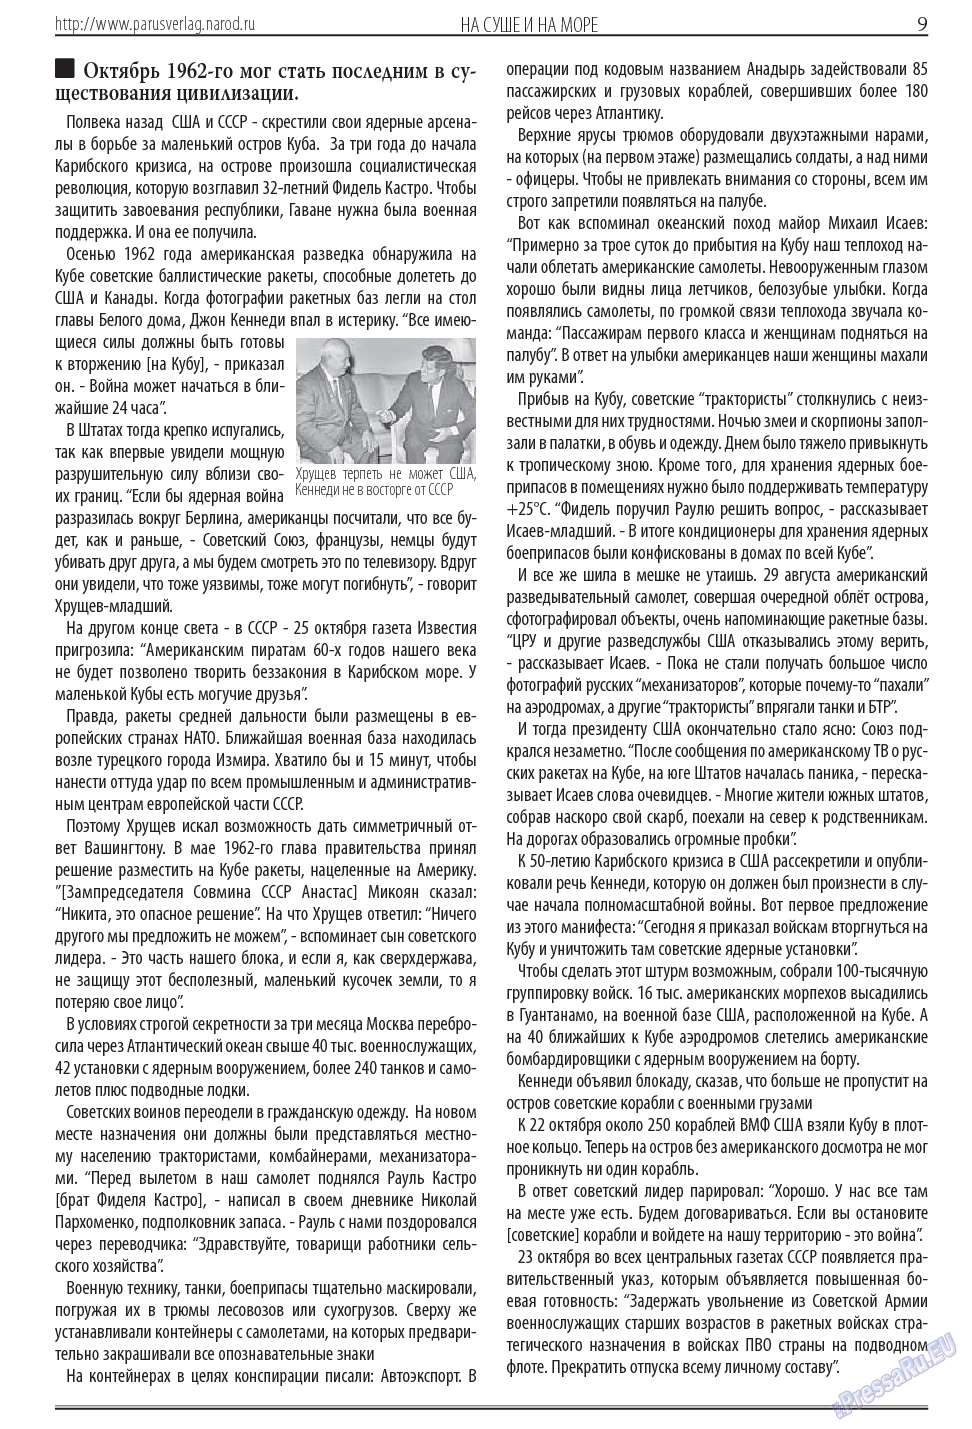 Парус (газета). 2013 год, номер 11, стр. 9